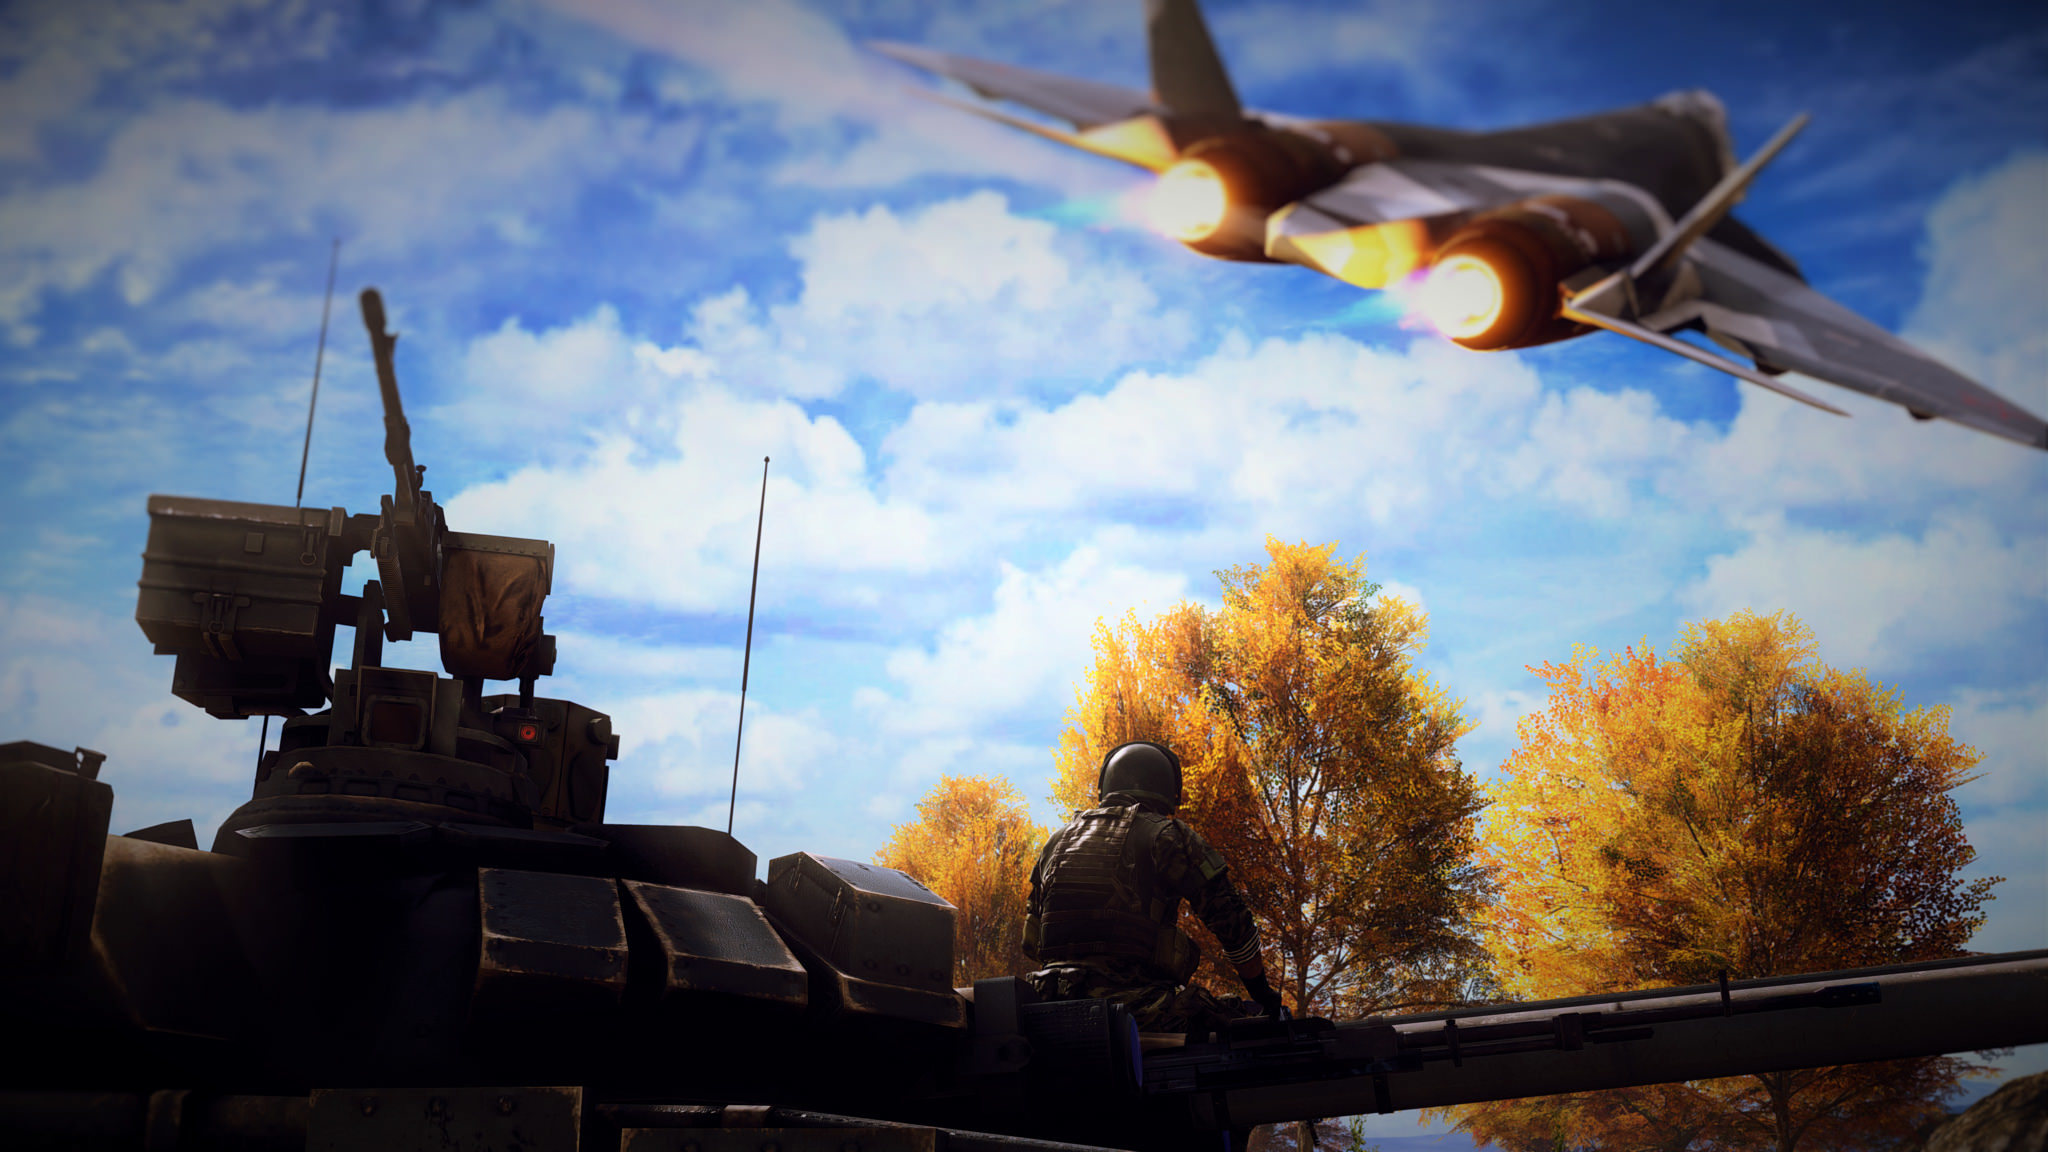 Скачать обои бесплатно Реактивный Истребитель, Видеоигры, Танк, Поле Битвы, Battlefield 4 картинка на рабочий стол ПК